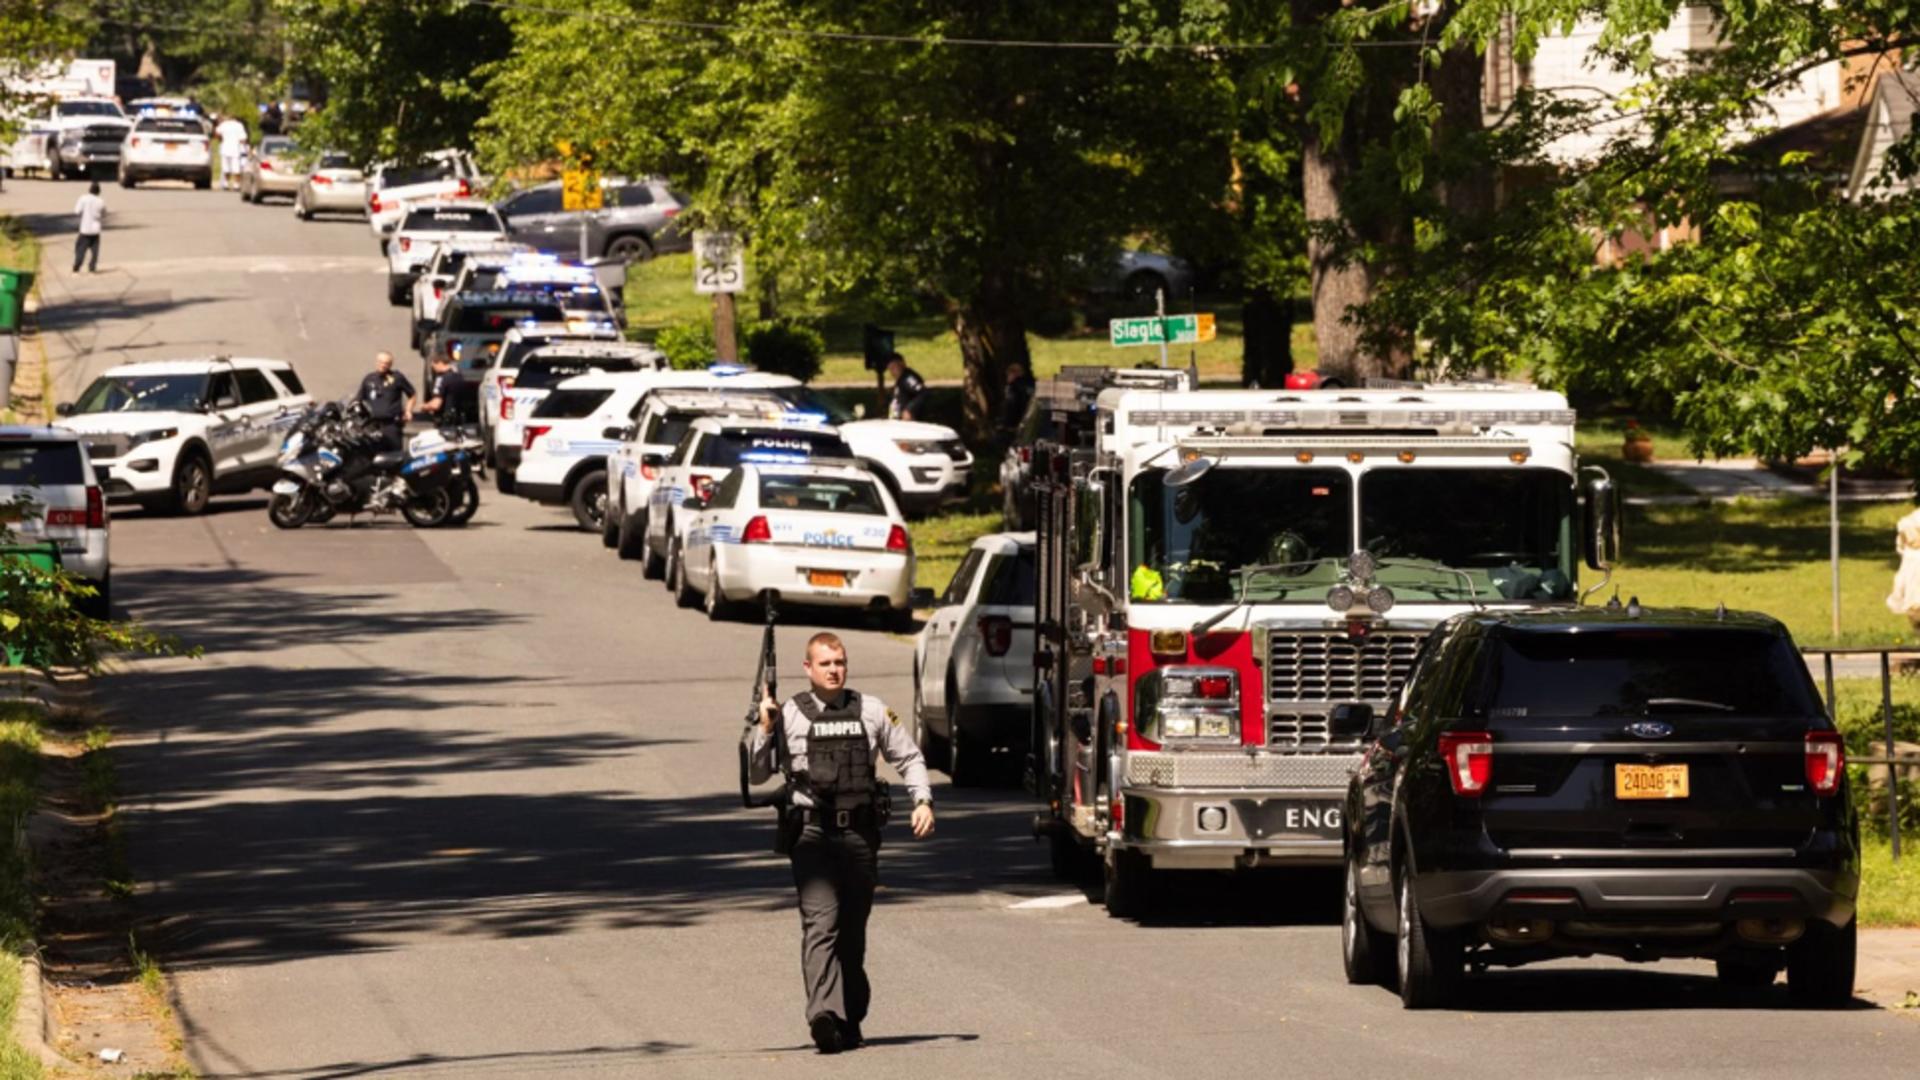 Schimb de focuri în plină zi, în Carolina de Nord: 4 poliţişti au fost ucişi și alți 4 răniți. Poliția a arestat 2 suspecți